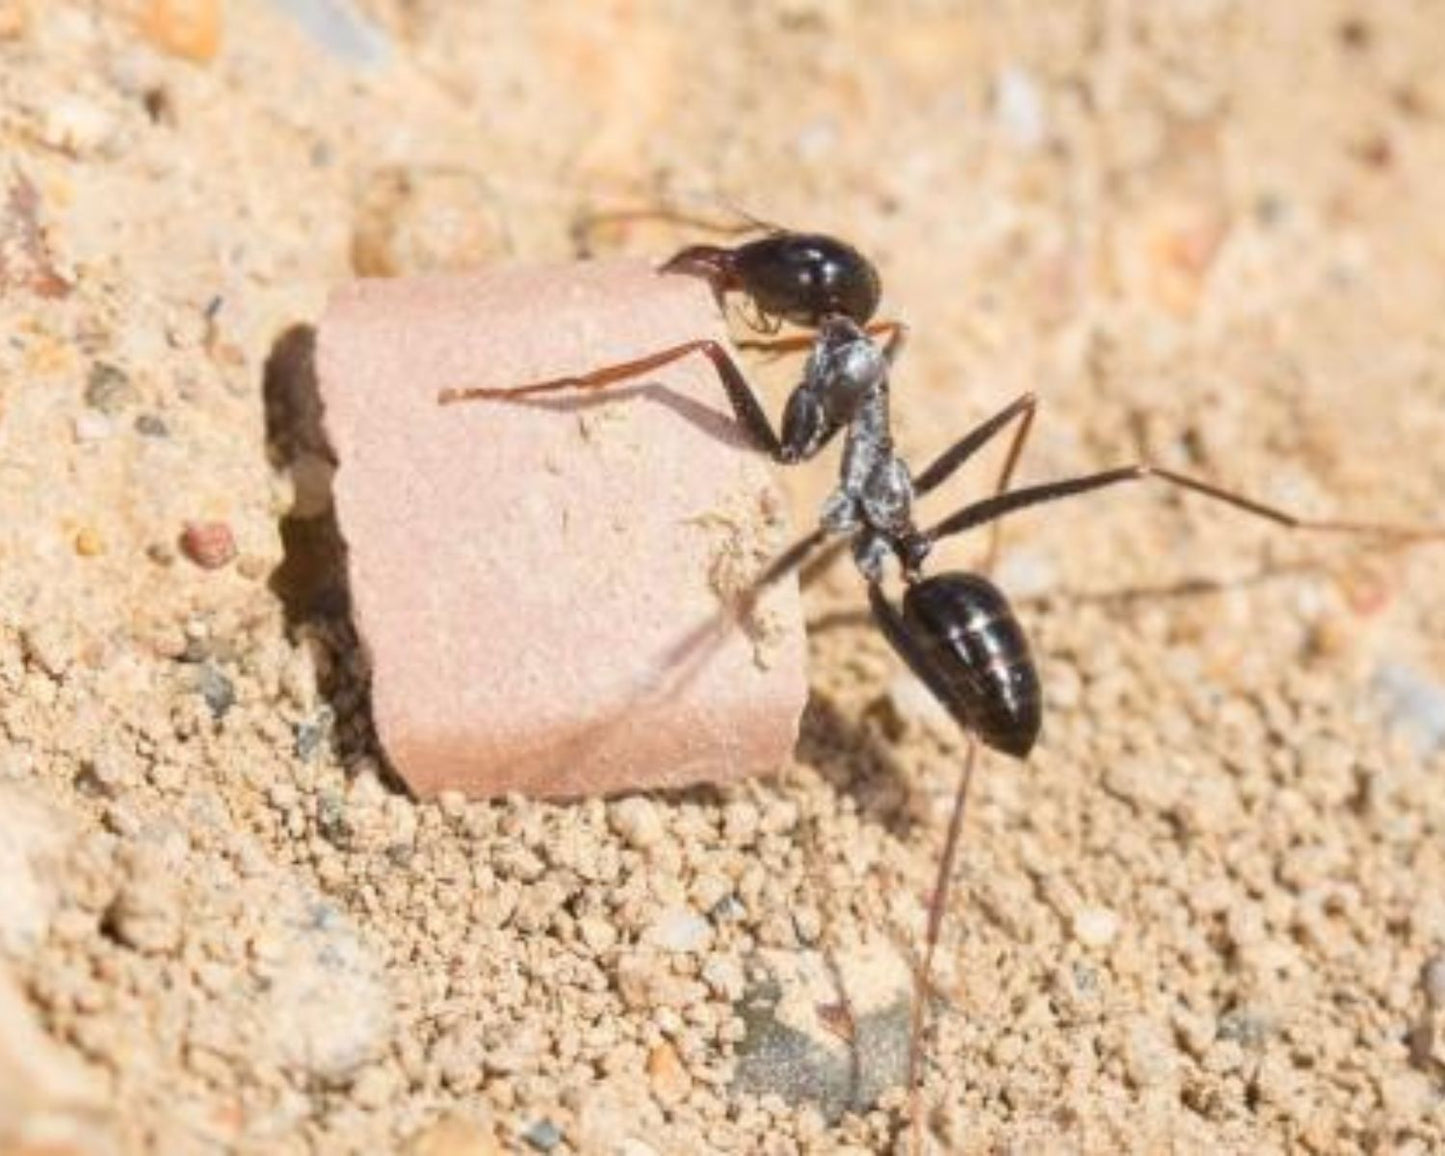 Hormigas - Cataglyphis iberica